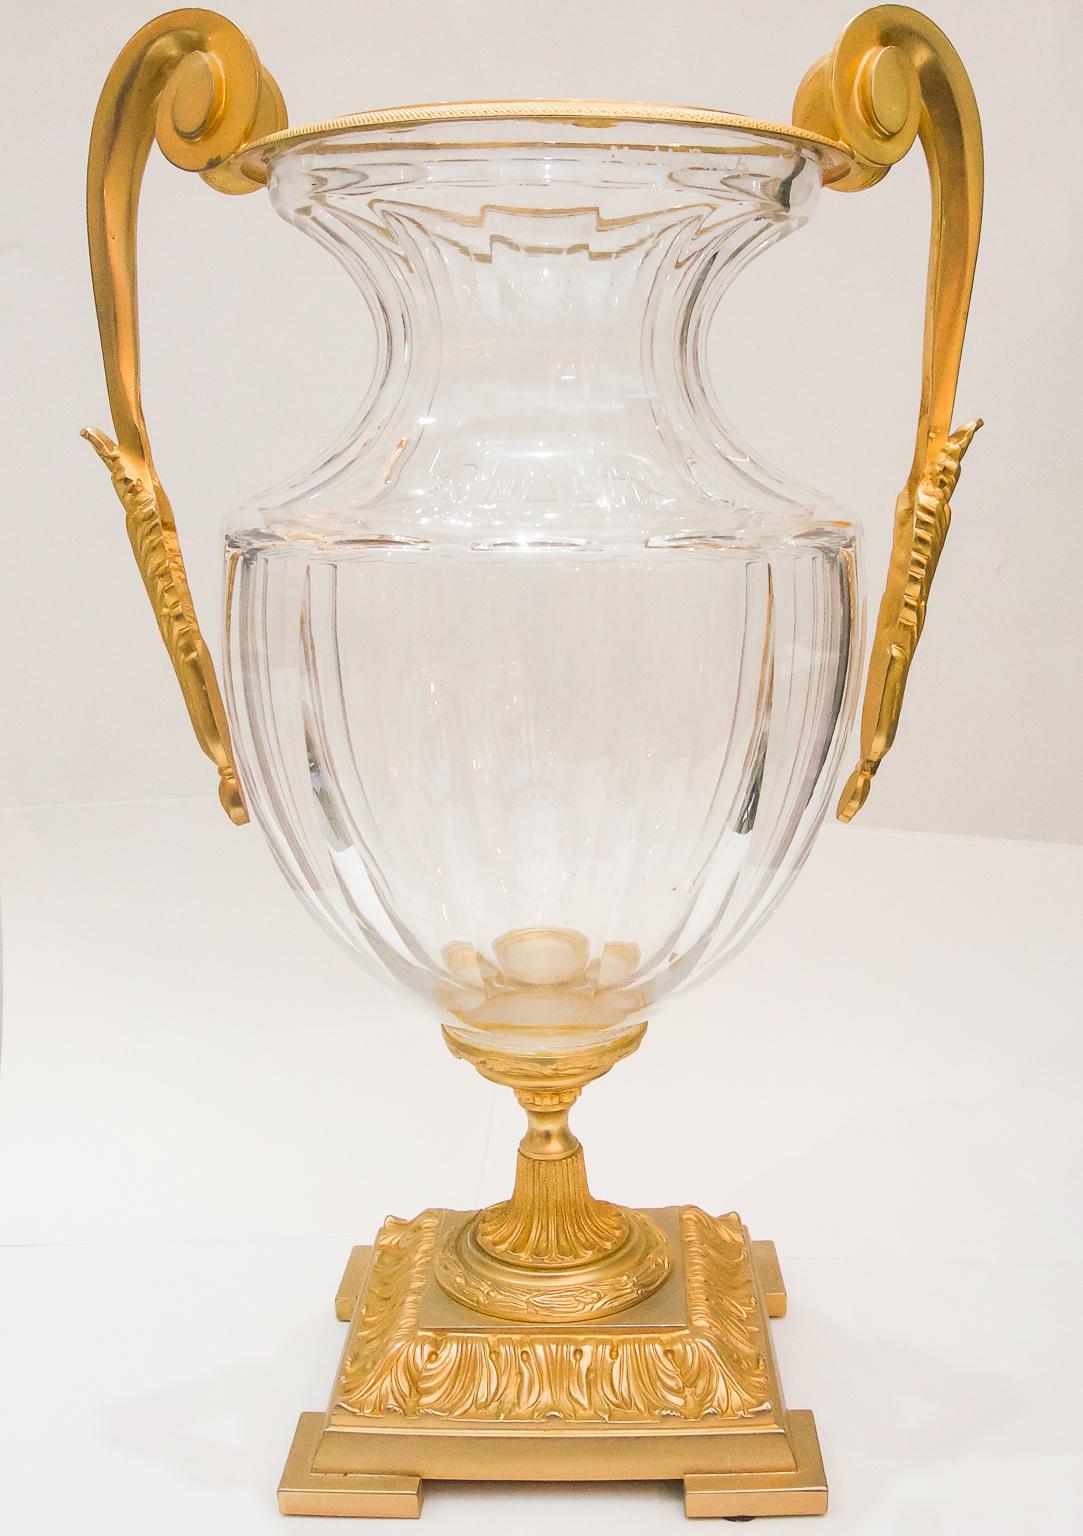 Cet élégant vase de style Louis XVI en cristal et bronze de Frnech date des années 1960 et a été créé par Martin Benito pour Cristal Freres.

Note : Signature gravée à l'acide Martin Benito, Cristal Freres et Made in France (voir photos 3, 4 et 5).